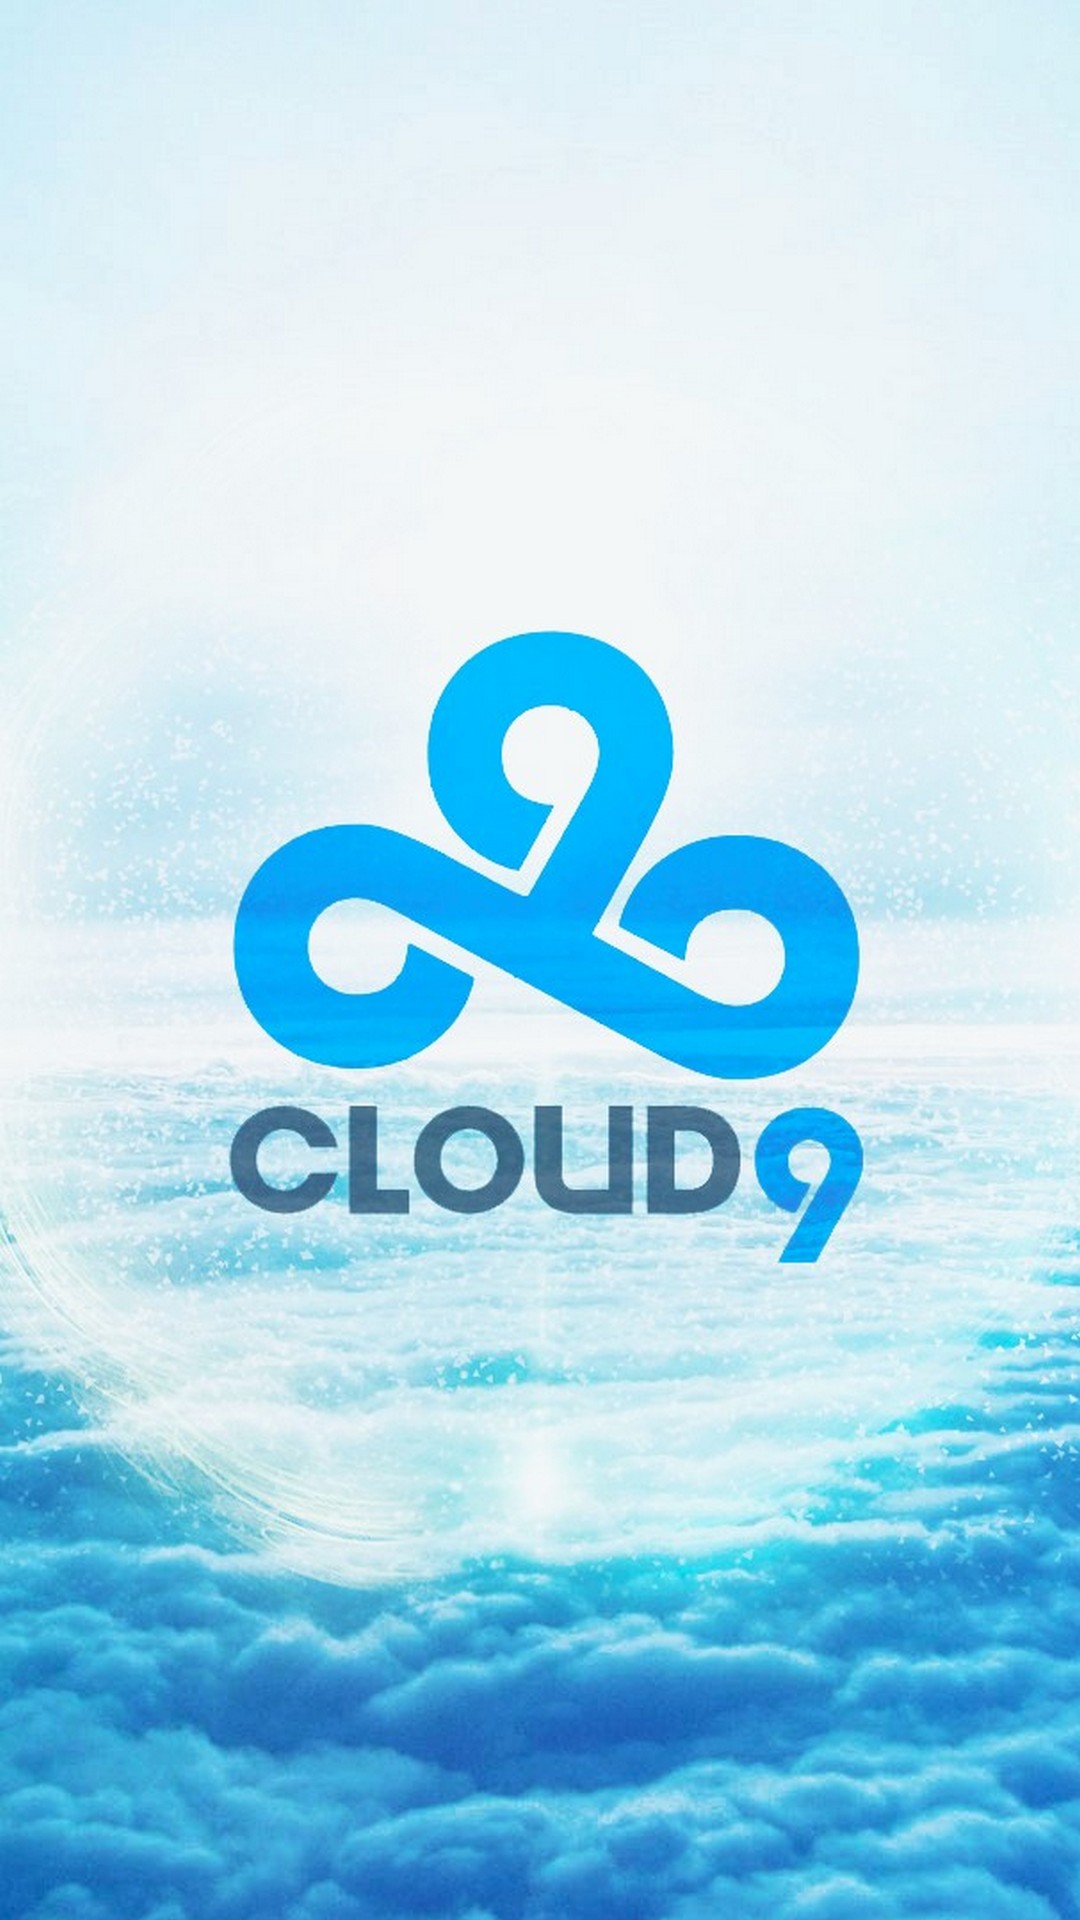 cloud 9 iphone wallpaper,himmel,aqua,blau,text,wasser